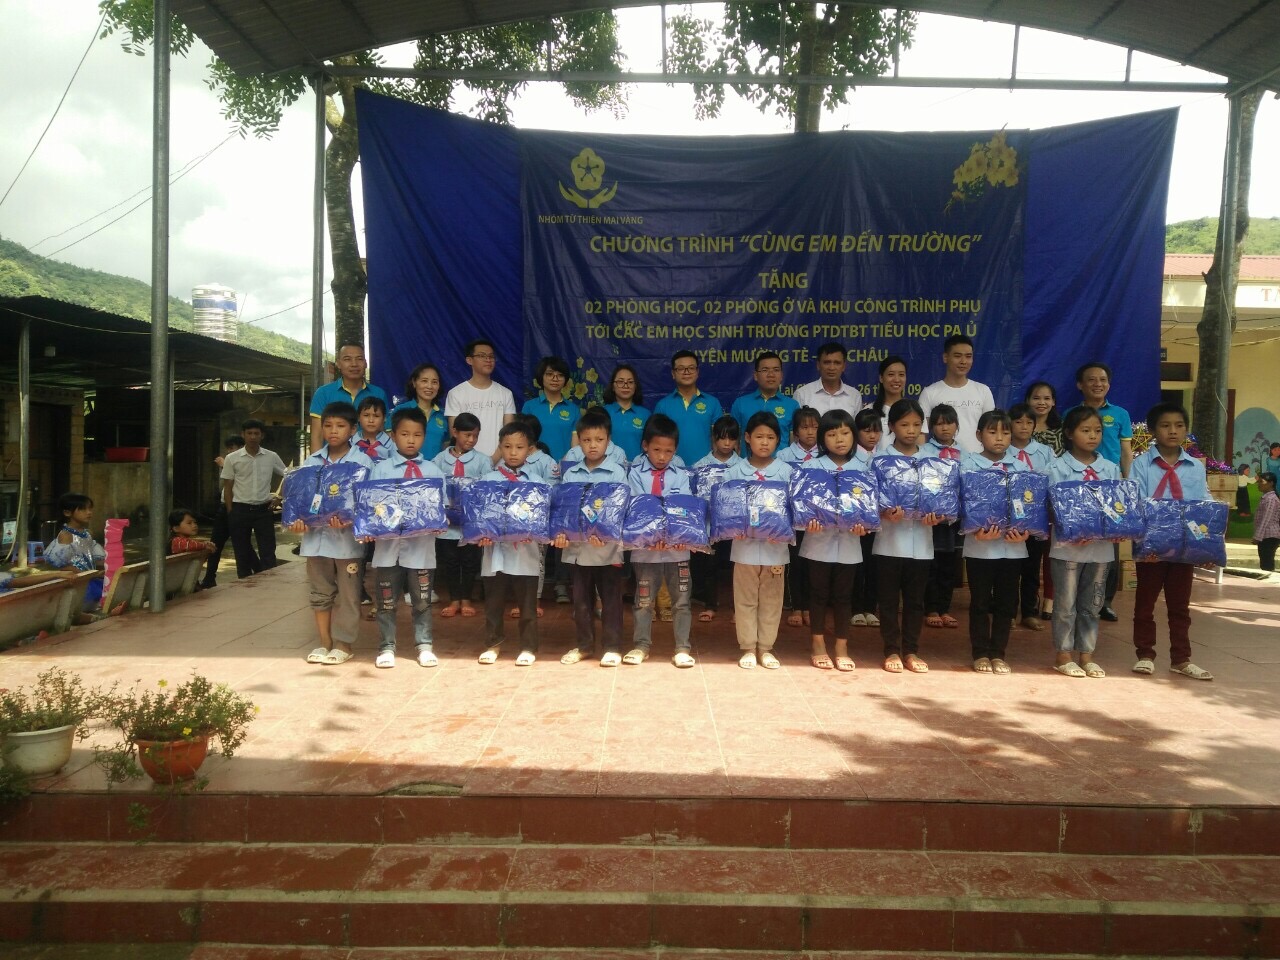 Các thành viên trong nhóm Mai Vàng tặng áo ấm cho các cháu học sinh trường PTDTBT Tiểu học Pa Ủ